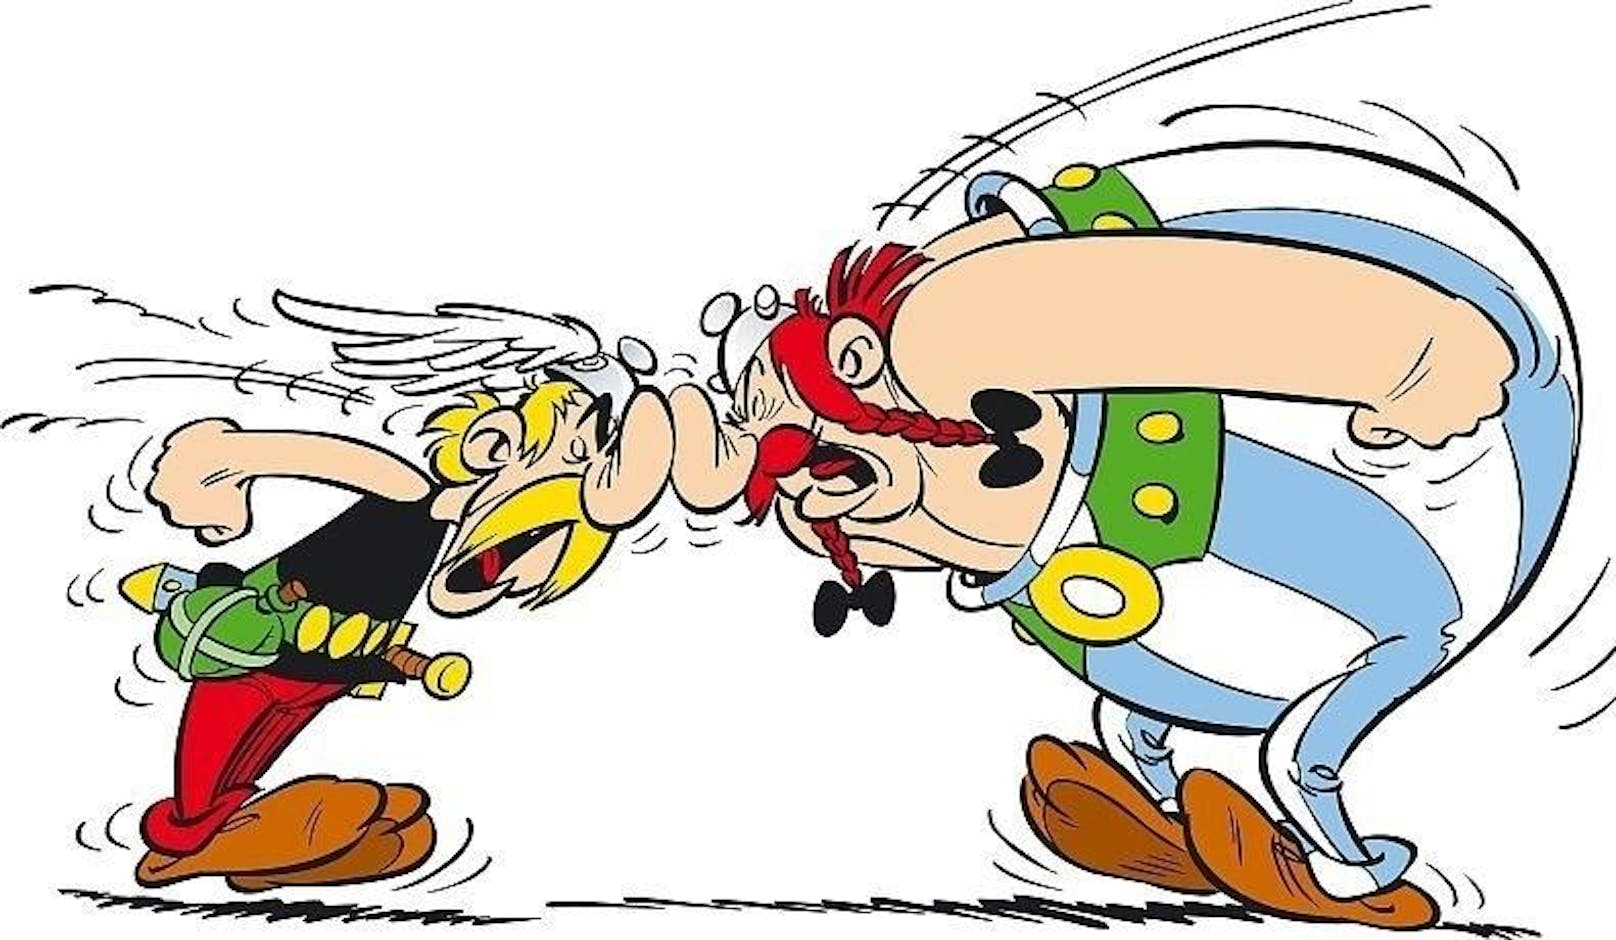 Asterix und Obelix sind Junggesellen und besten Freunde. Wenn sie allerdings streiten, werden sie förmlich. Dann ist nur noch von "Herr Asterix" und "Herr Obelix" die Rede.